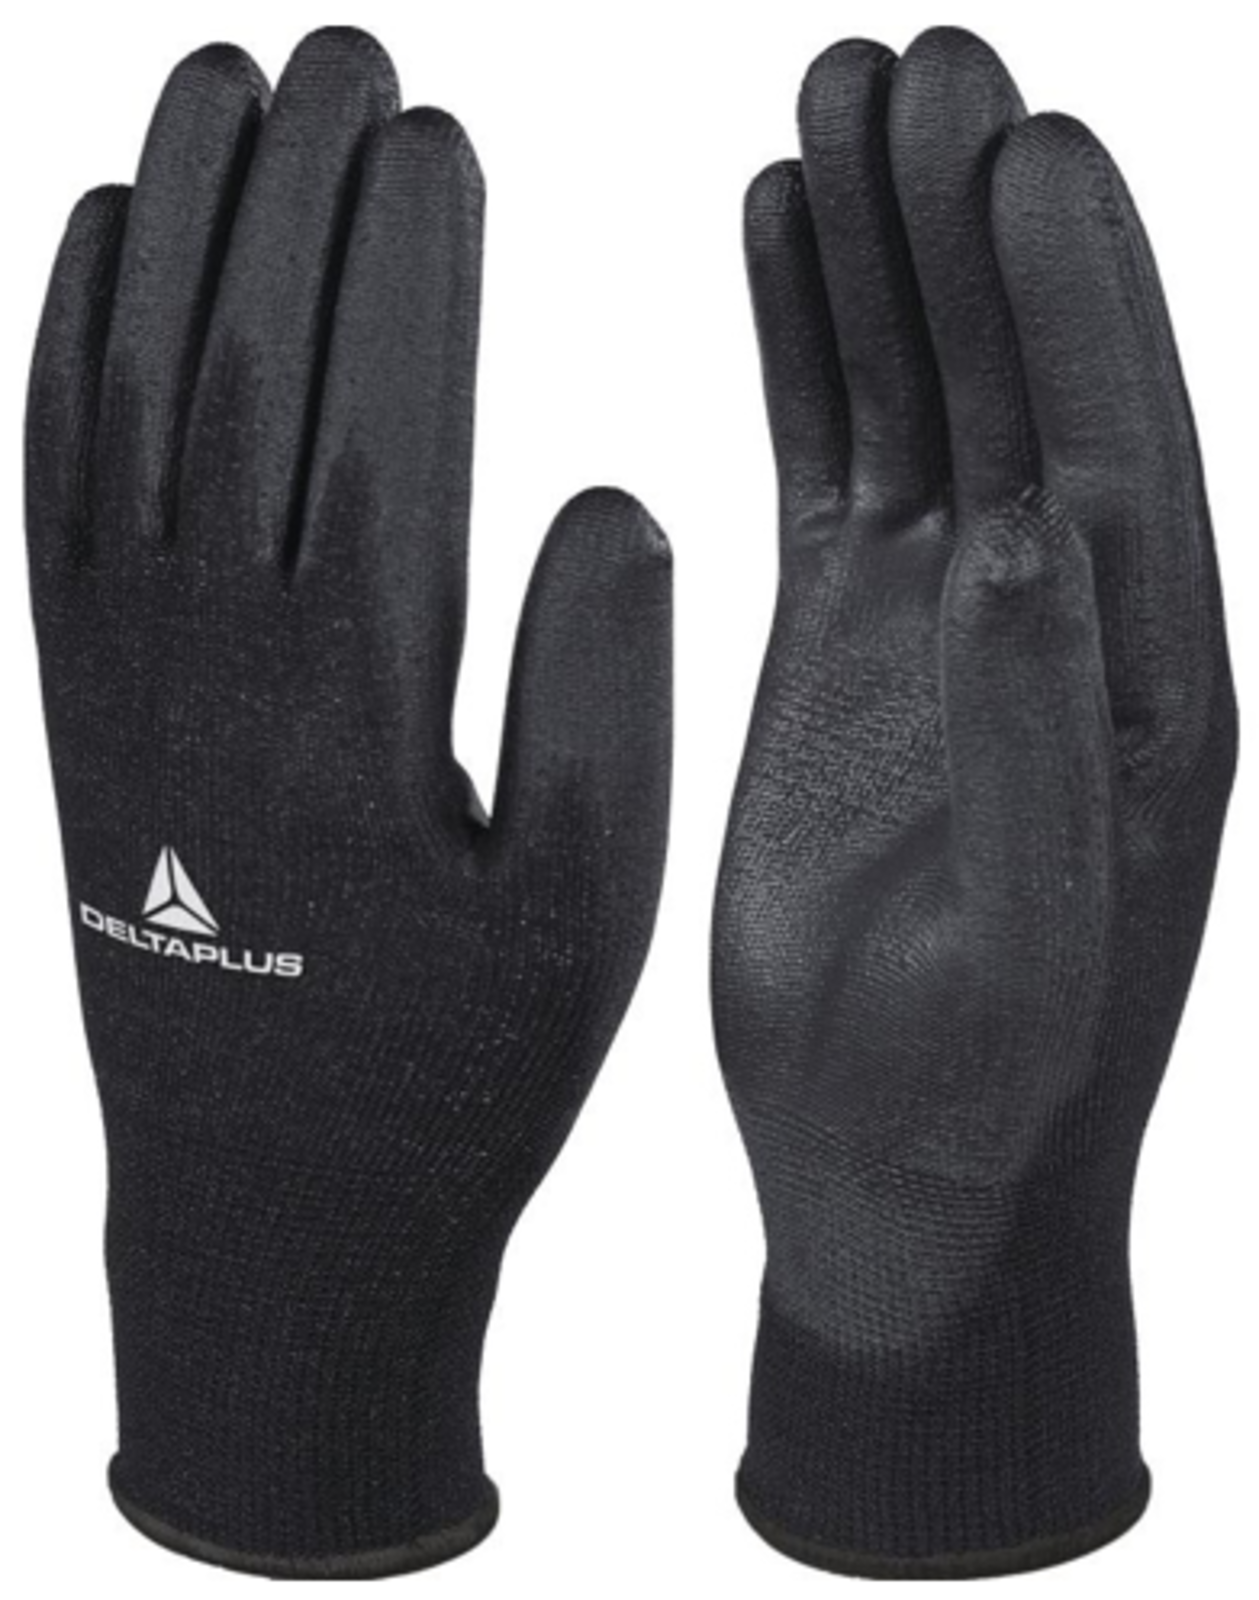 Pracovné rukavice Delta Plus VE702PN - veľkosť: 7/S, farba: čierna